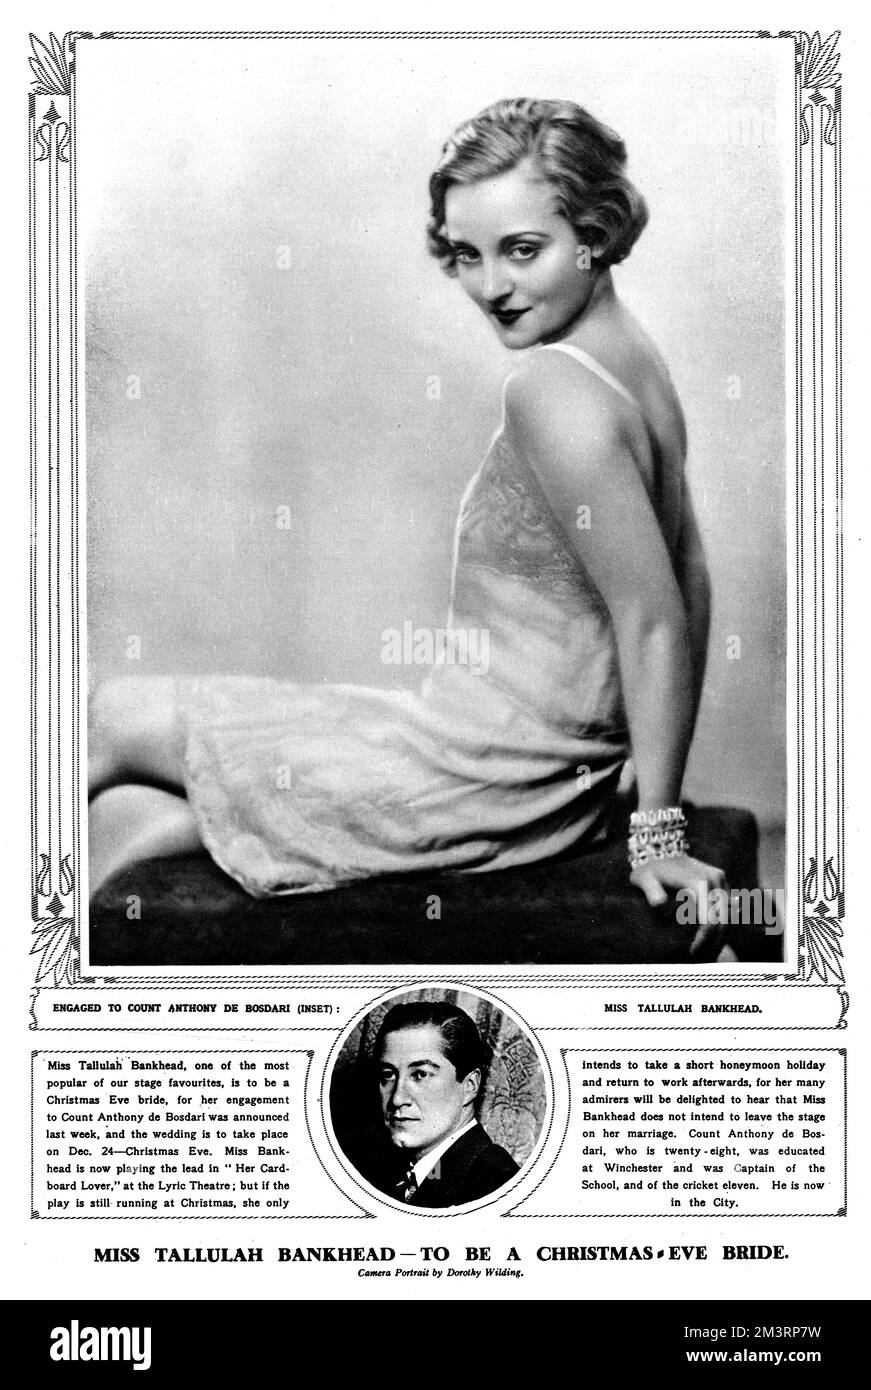 Fotografia in bianco e nero della popolare attrice americana Tallulah Bankhead che stava celebrando il suo impegno con il Conte Anthony de Bossari. Data: 28th novembre 1928 Foto Stock